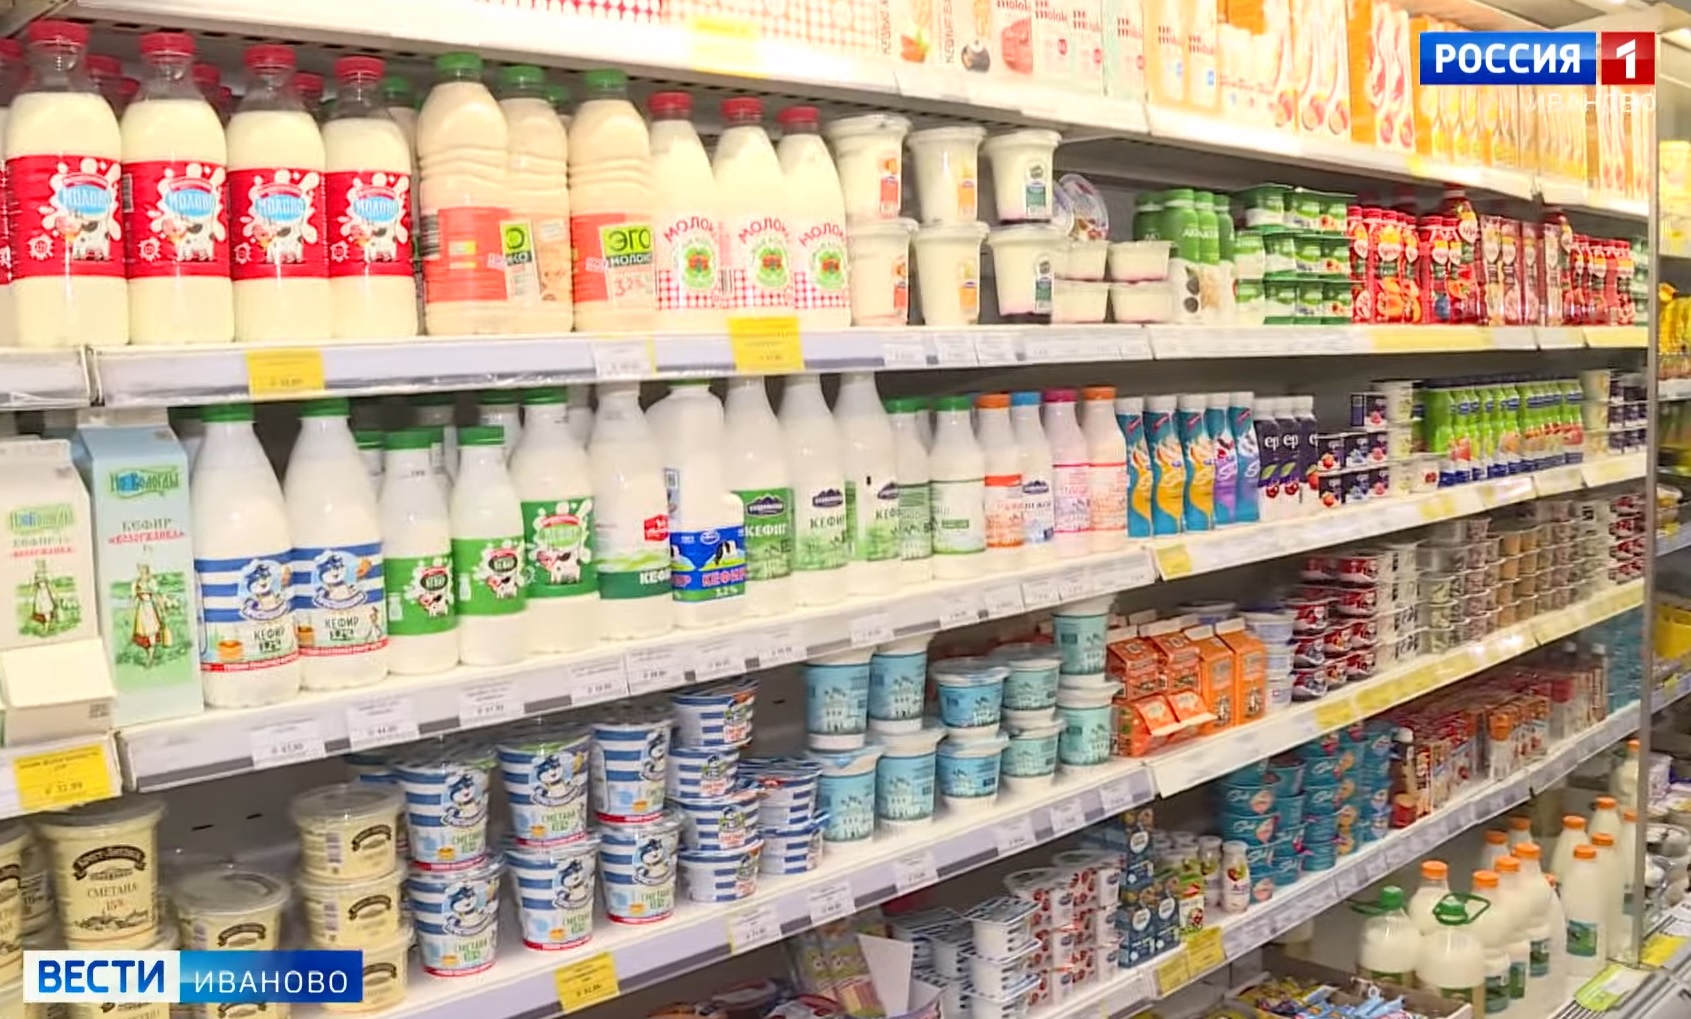 Предприятие из Ивановской области поставляло опасные молочные продукты в магазины региона